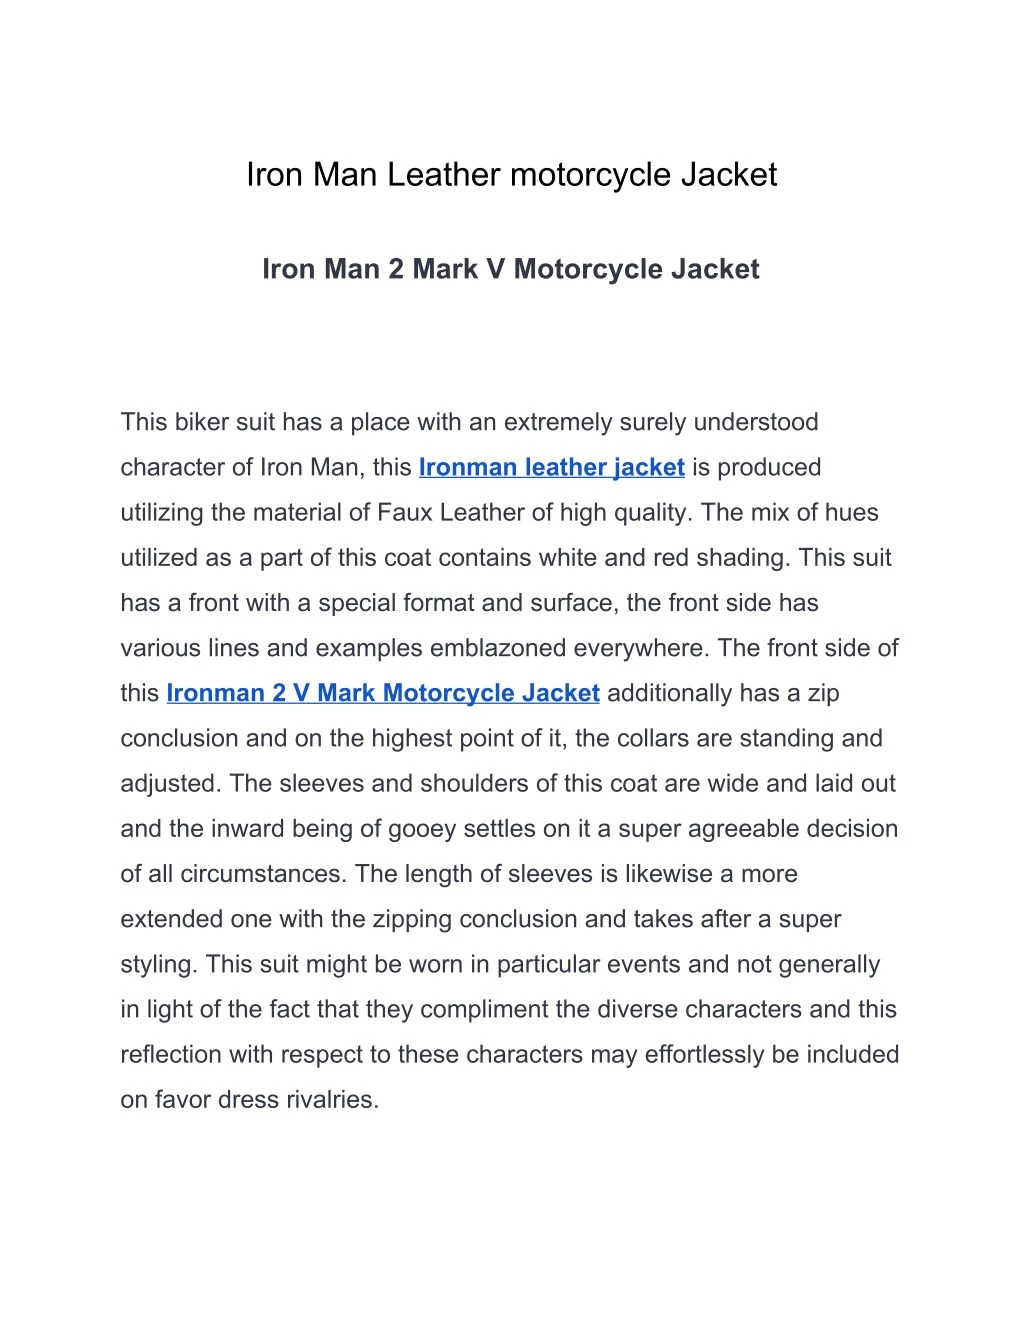 iron man leather motorcycle jacket